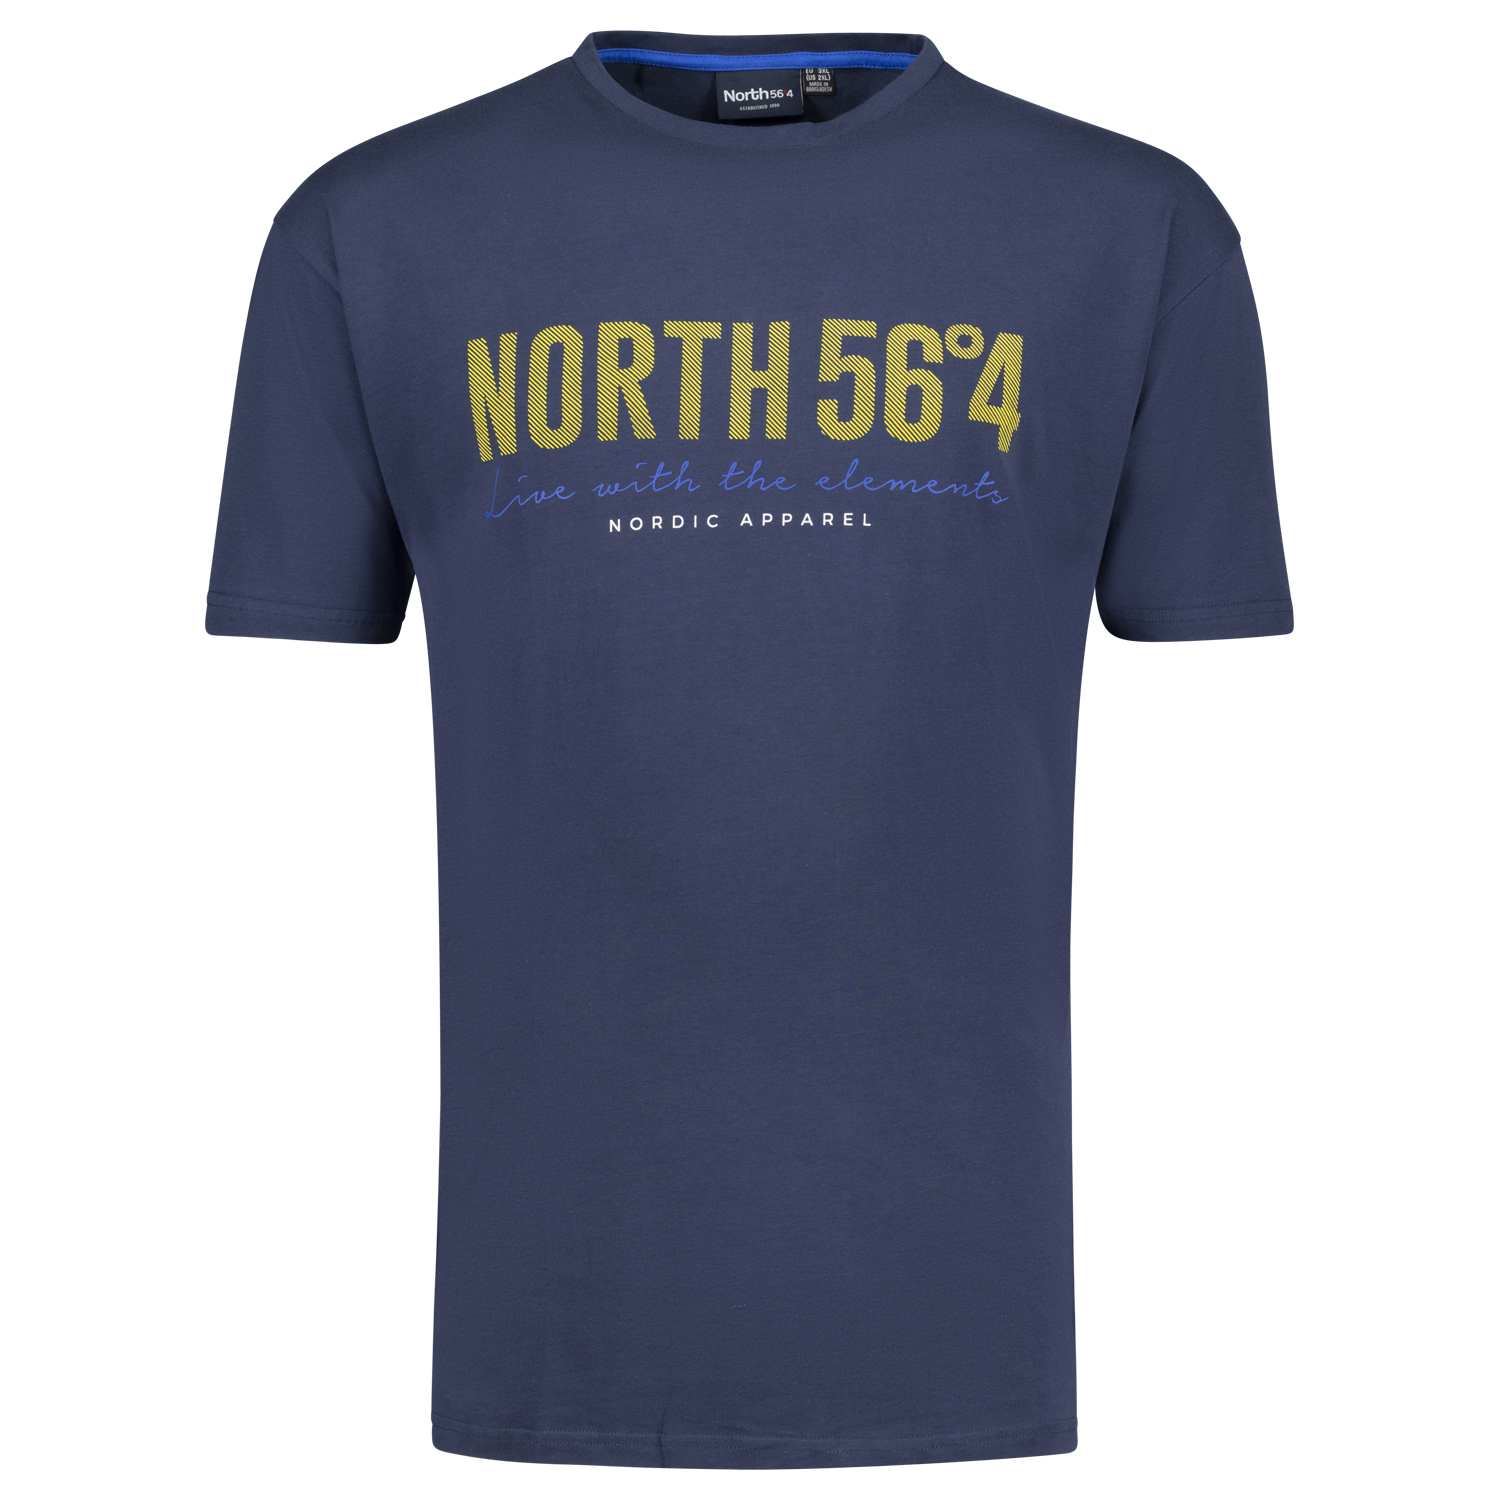 T-shirt bleu foncé pour homme de North 56°4 // grandes tailles jusqu'au 8XL